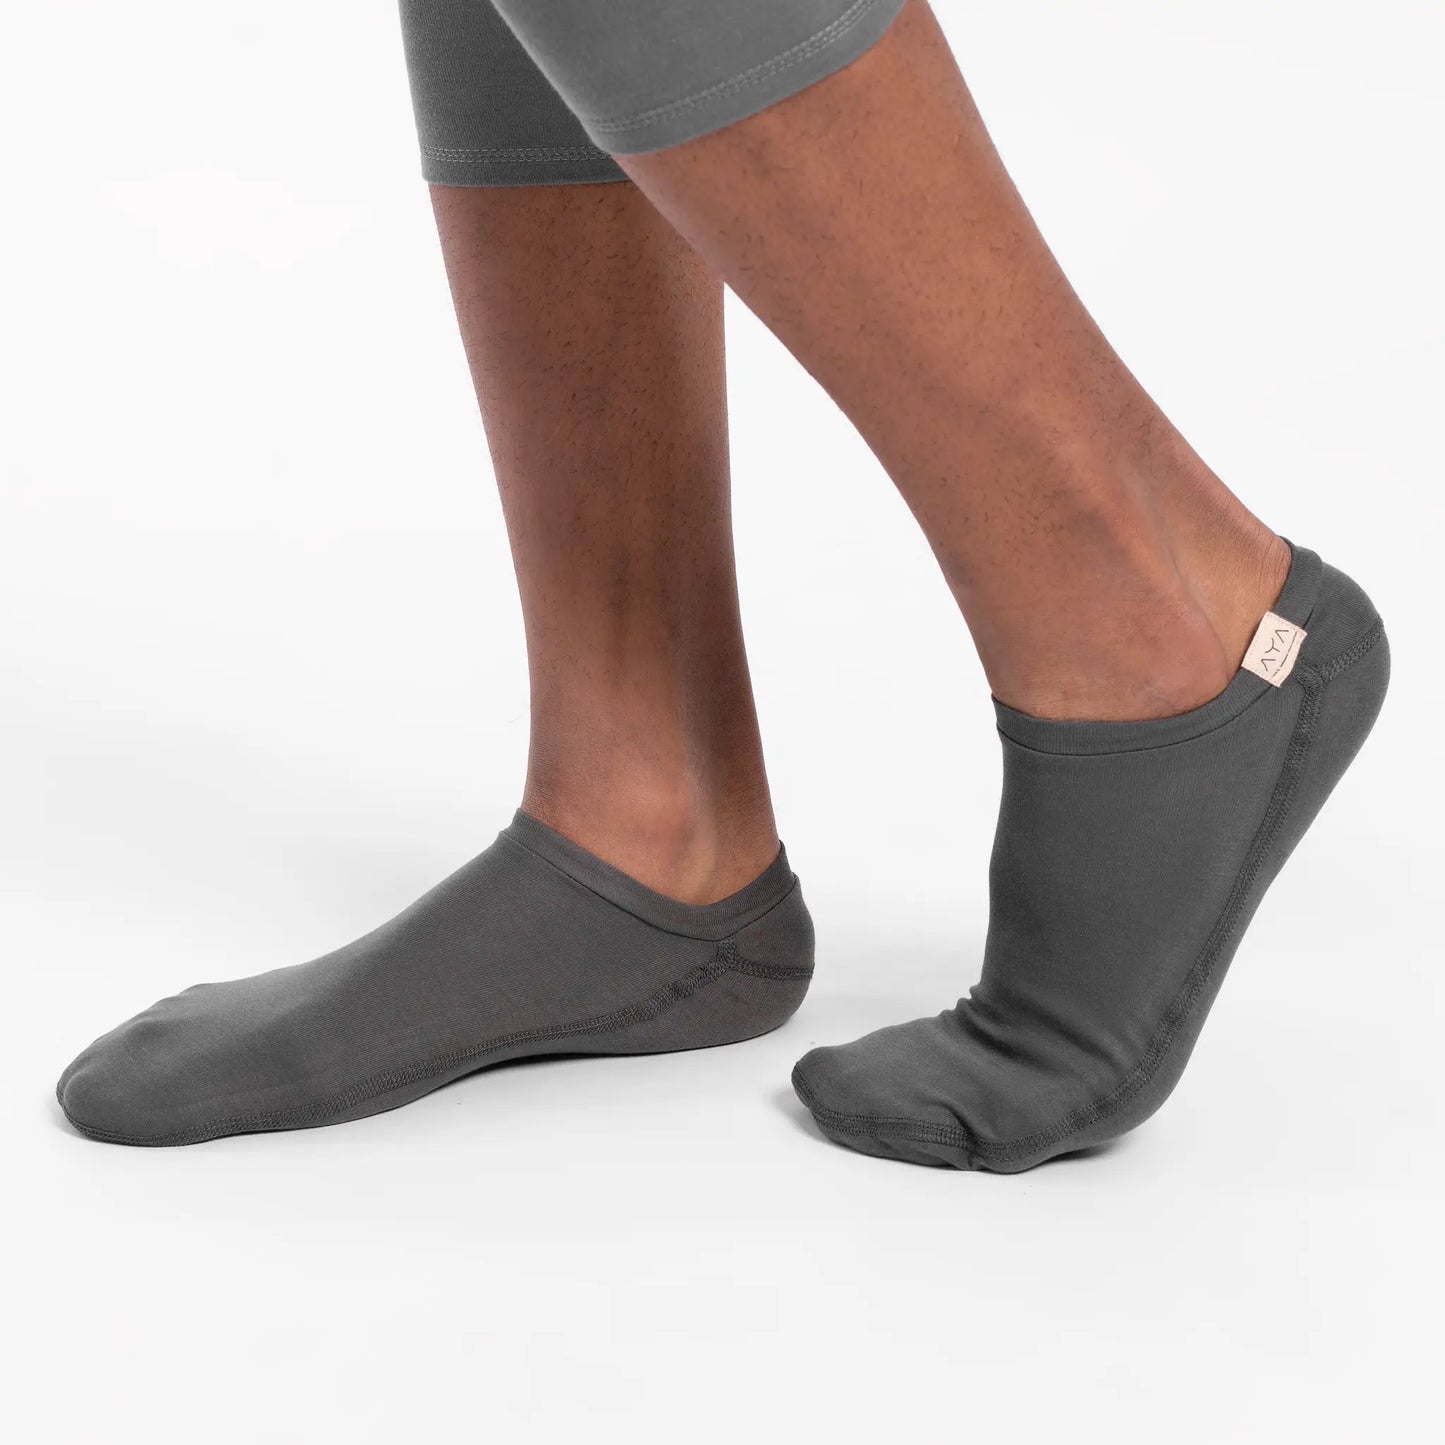 unisex slipper socks comfortable color gray